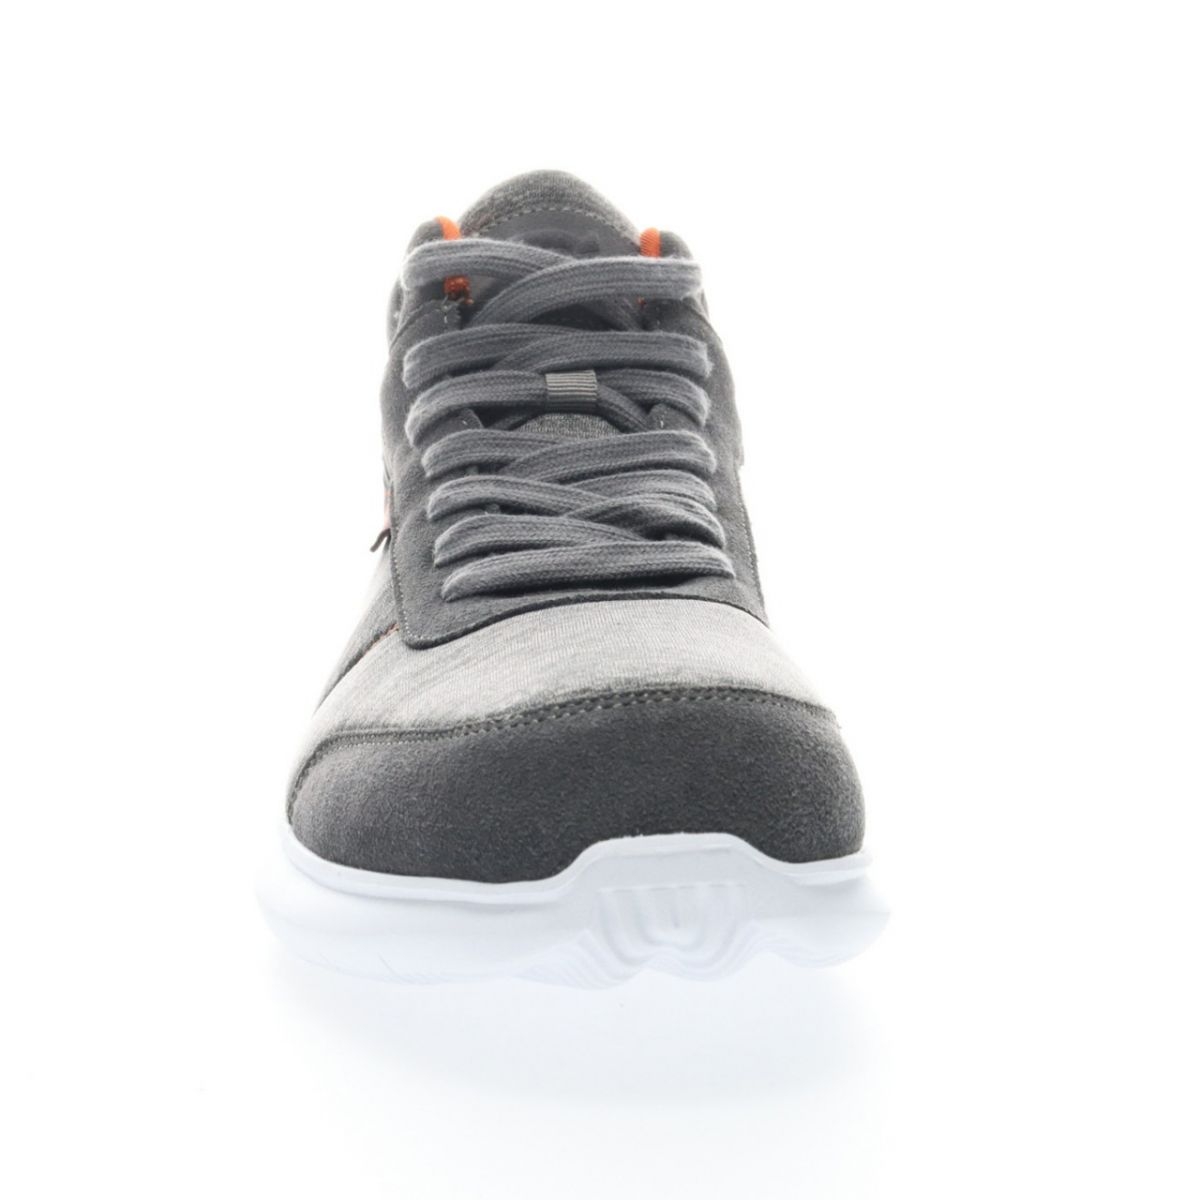 Propet Men's Viator Hi Sneaker Grey/Orange - MAA112MGOR Grey/orange - Grey/orange, 10 X-Wide